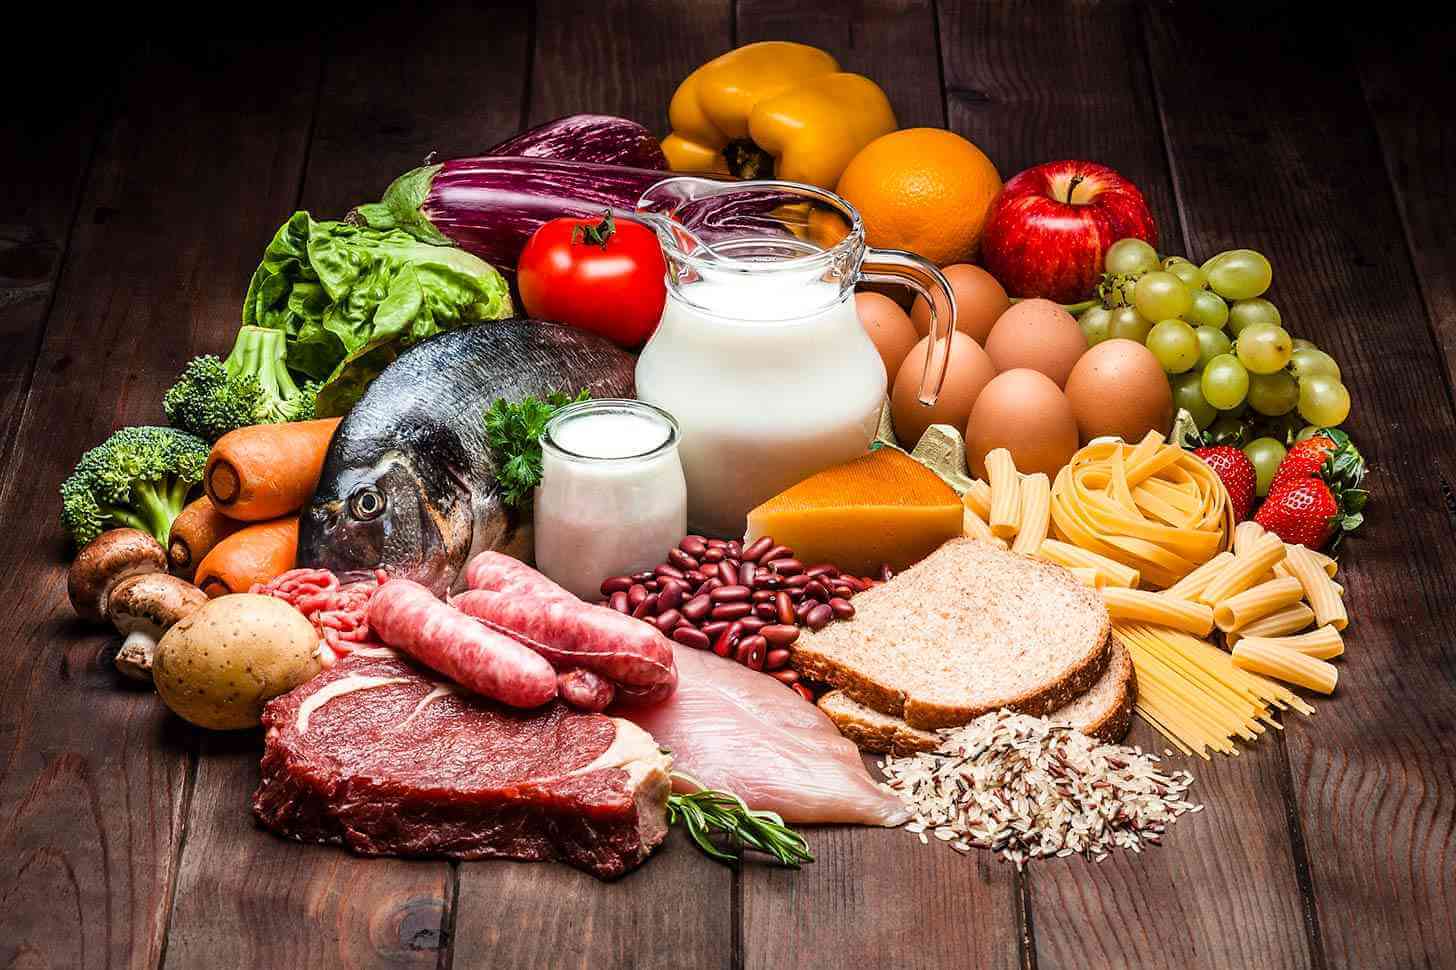 尿素氮偏高要少吃蛋白质含量高的食物